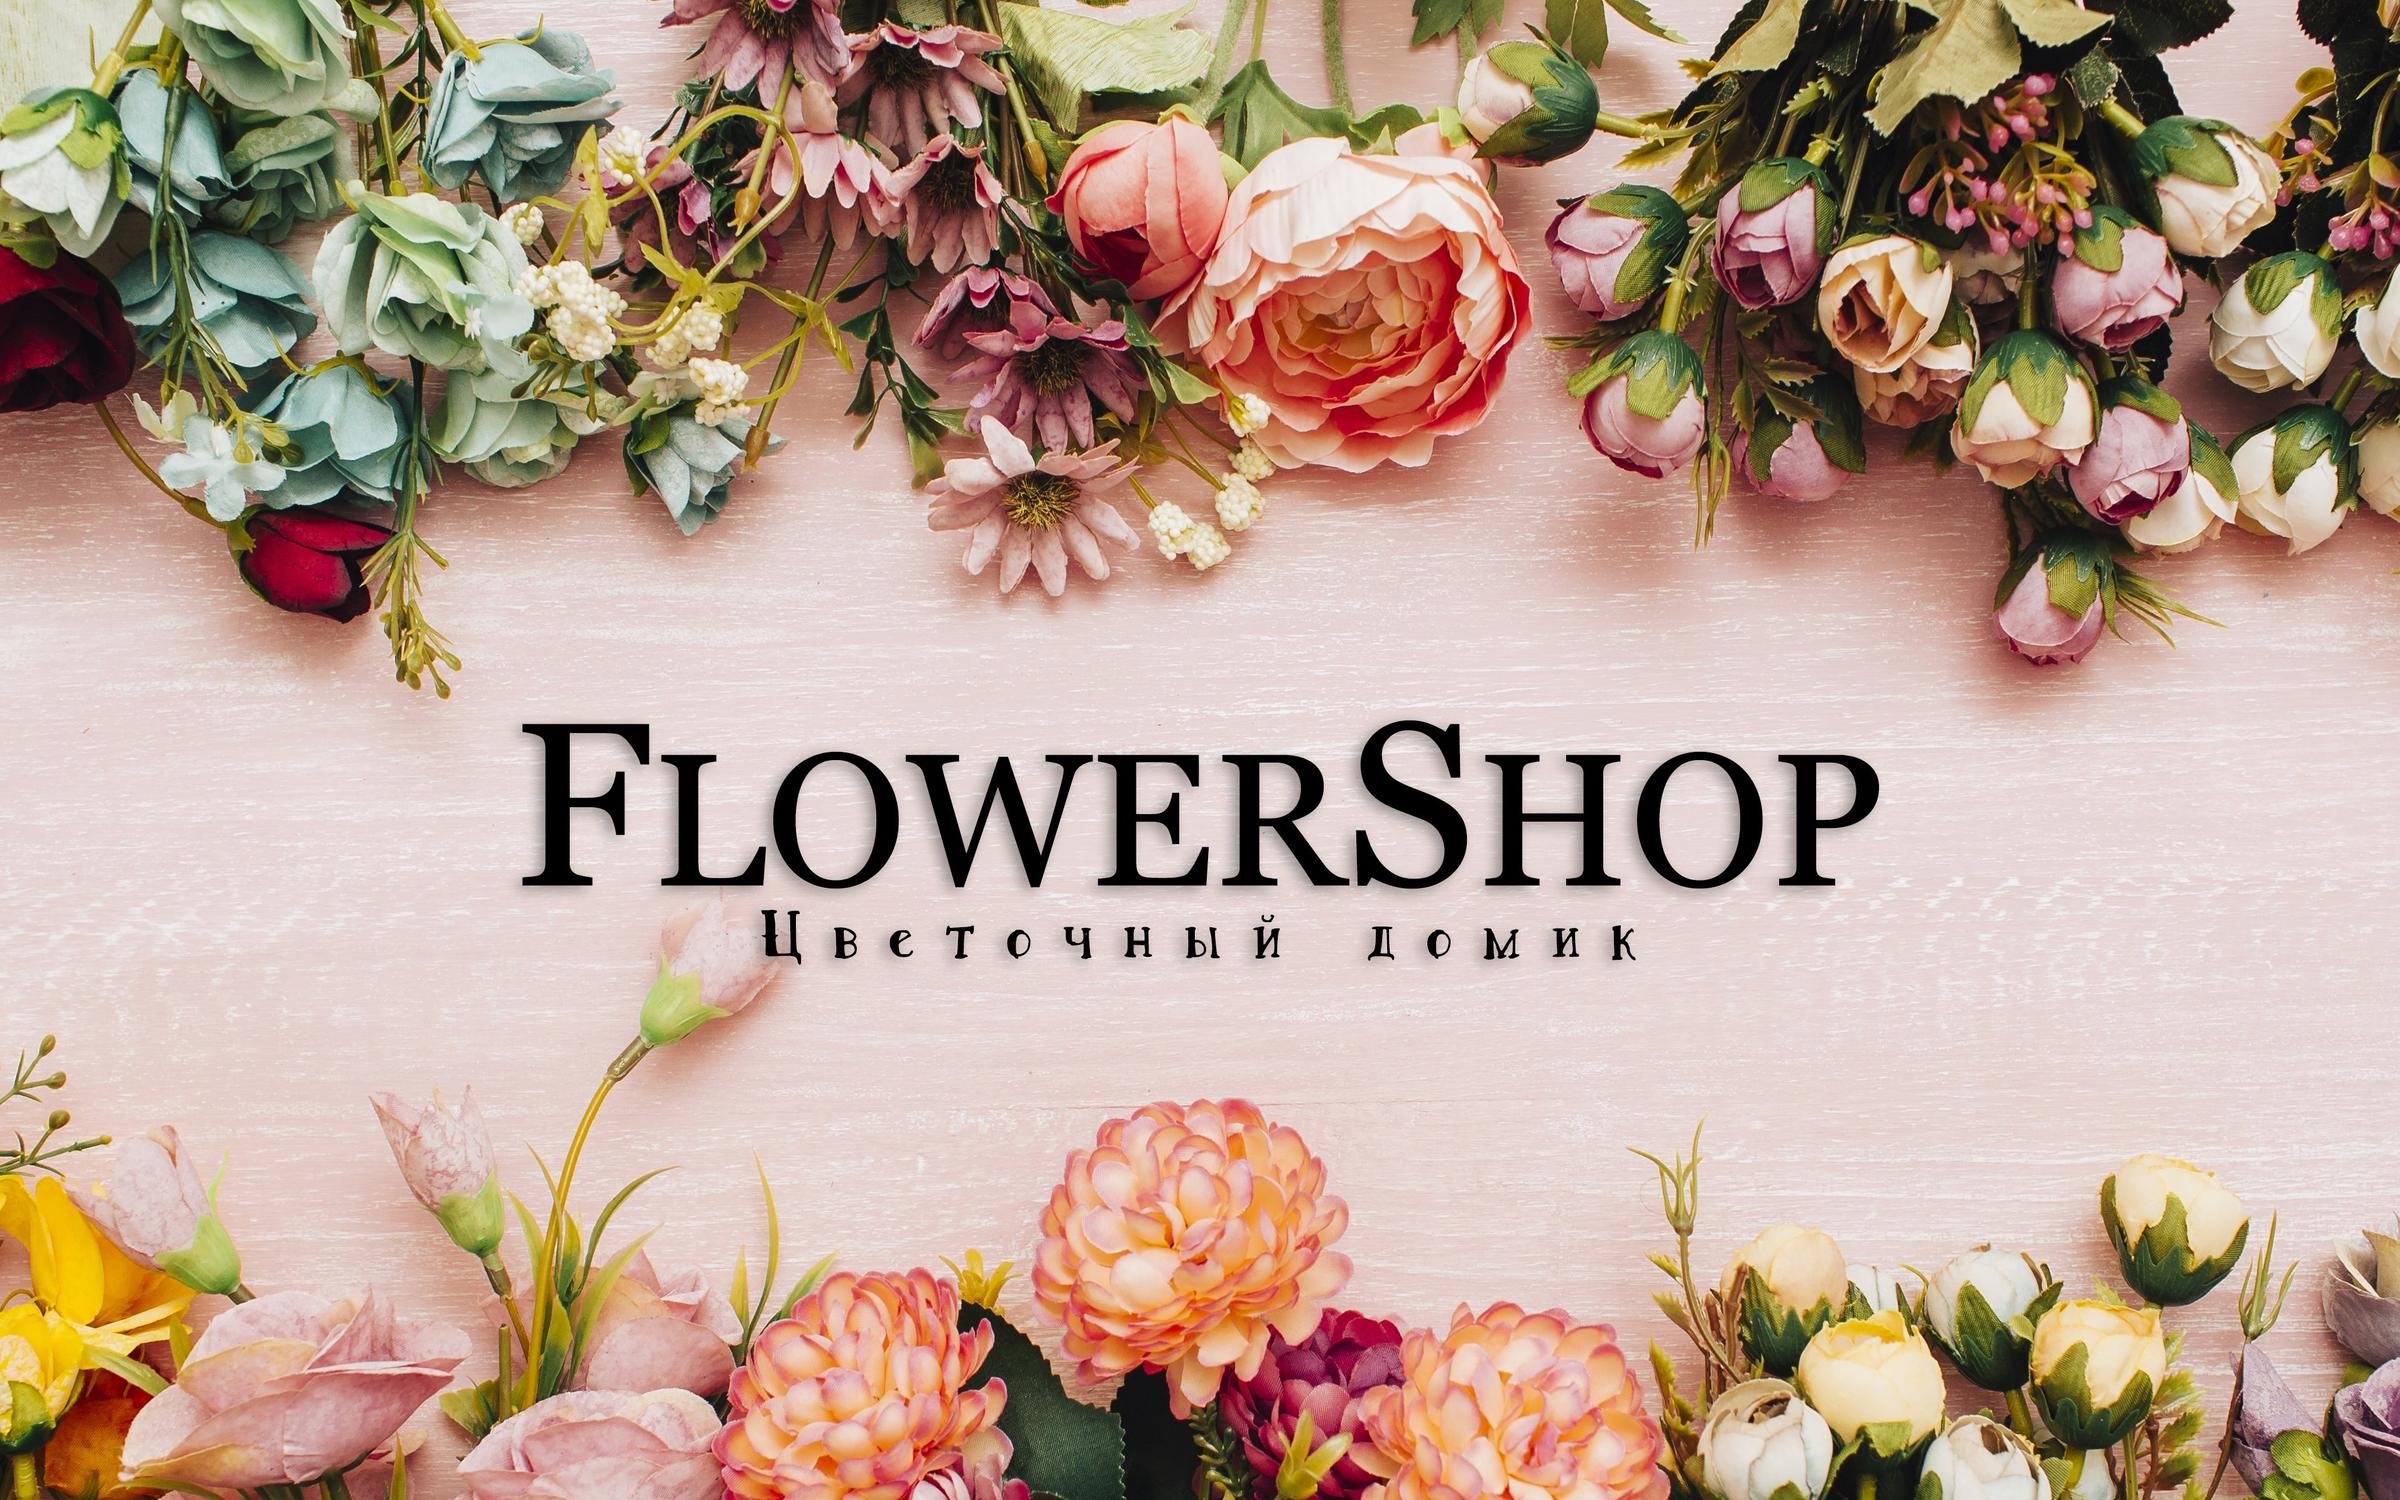 Открытие магазина цветов: шаги к успешному бизнесу